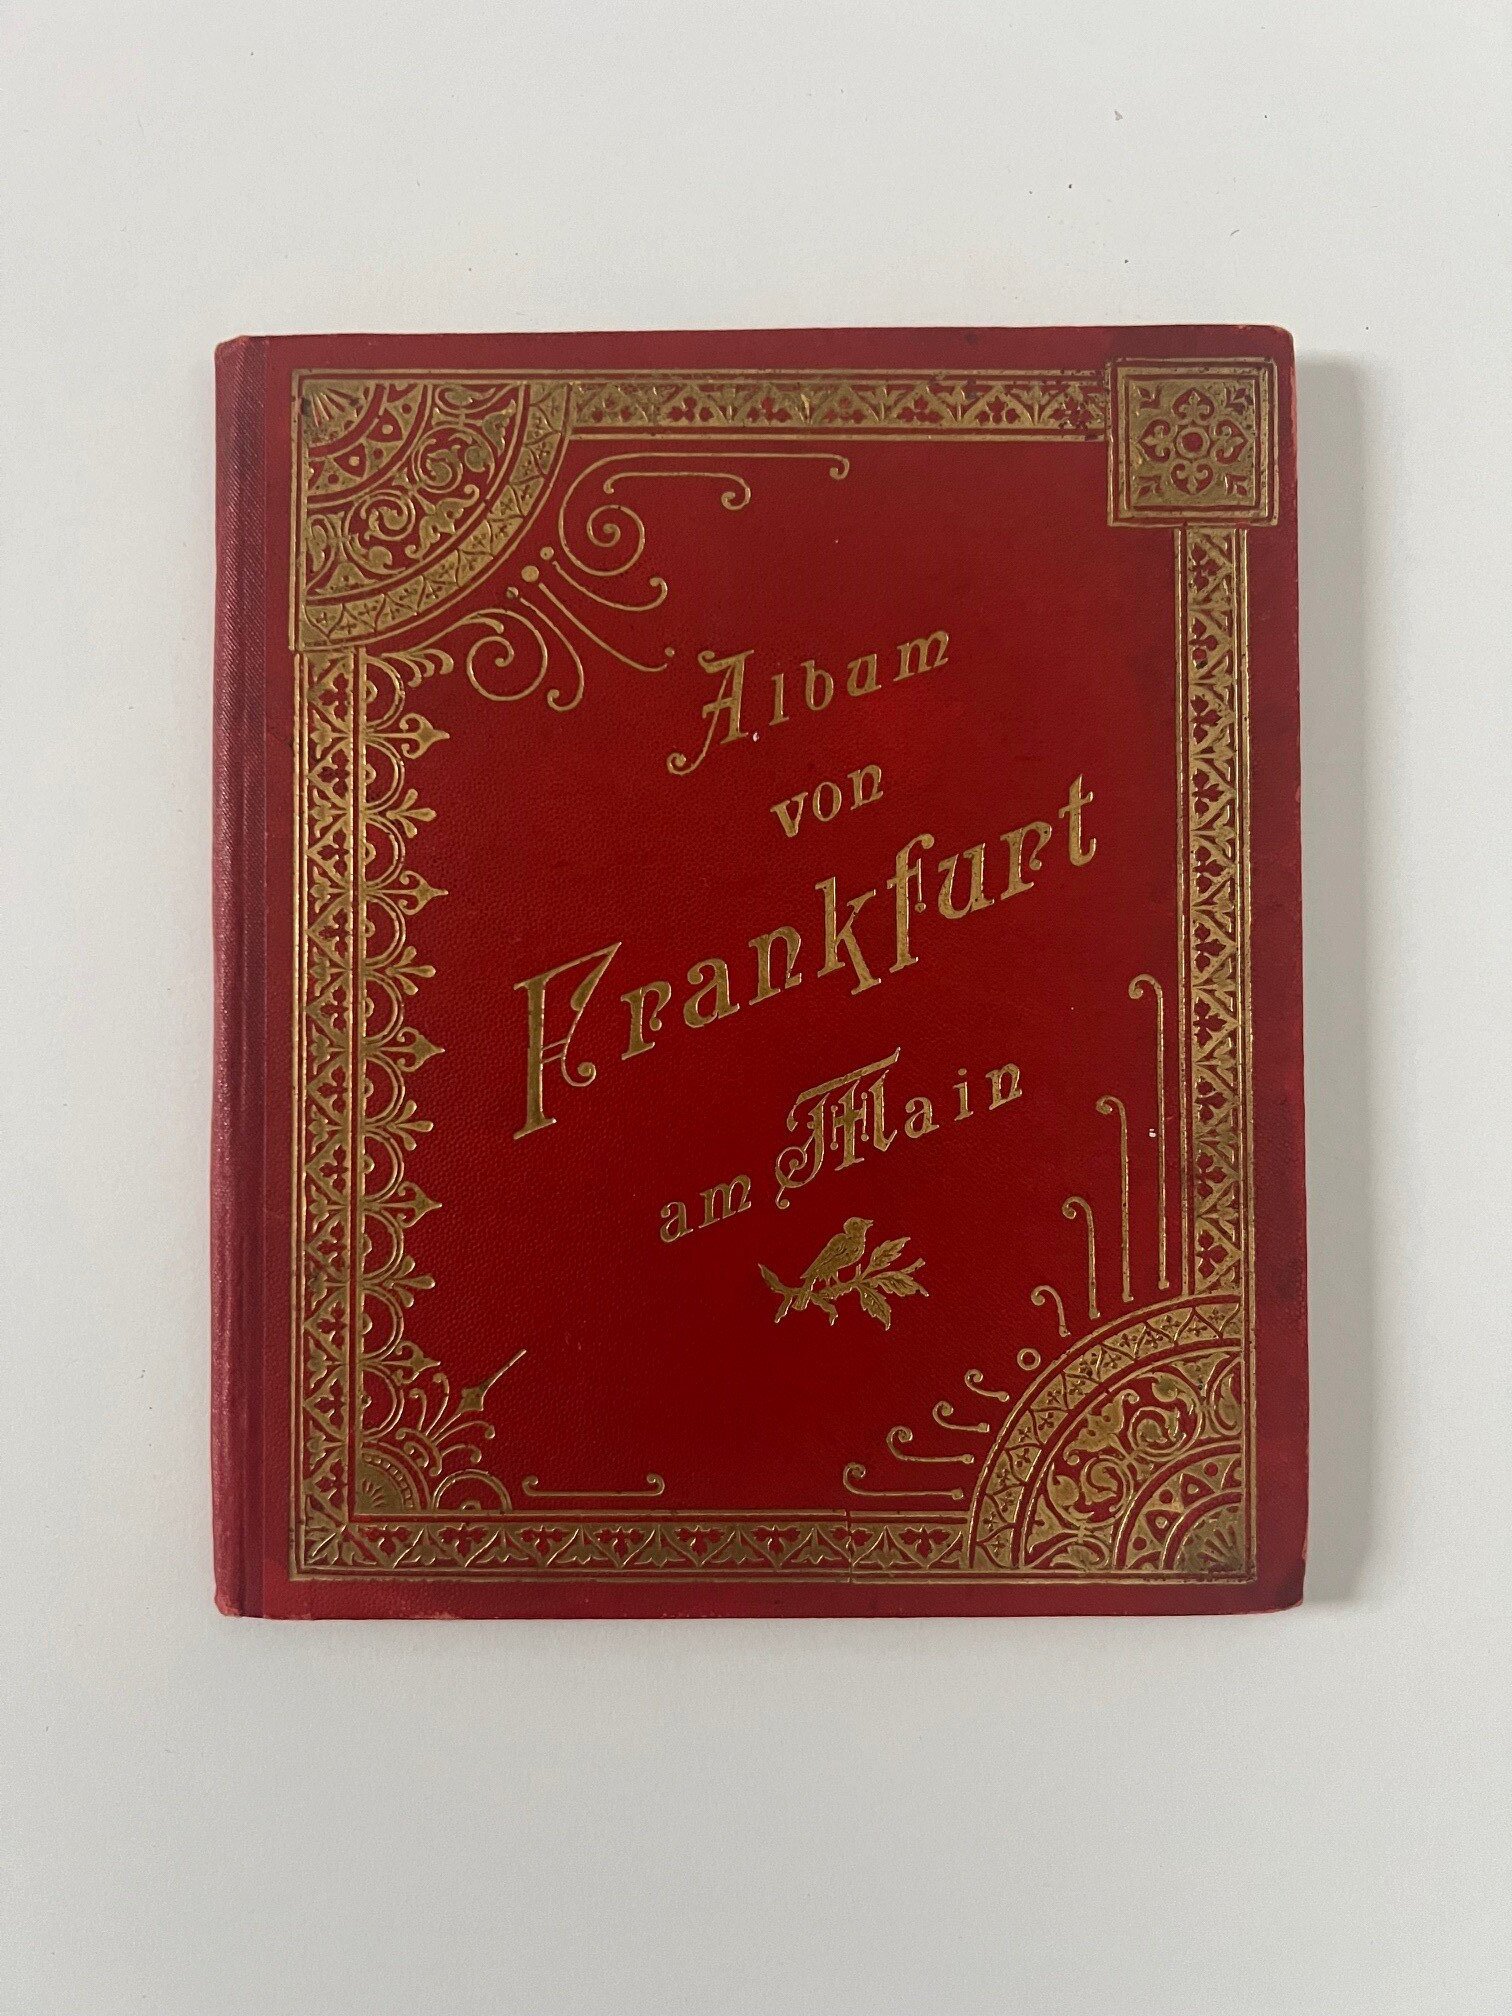 Verlag Gerhard Blümlein & Co, Album von Frankfurt am Main, 30 Lithographien als Leporello, ca. 1910. (Taunus-Rhein-Main - Regionalgeschichtliche Sammlung Dr. Stefan Naas CC BY-NC-SA)